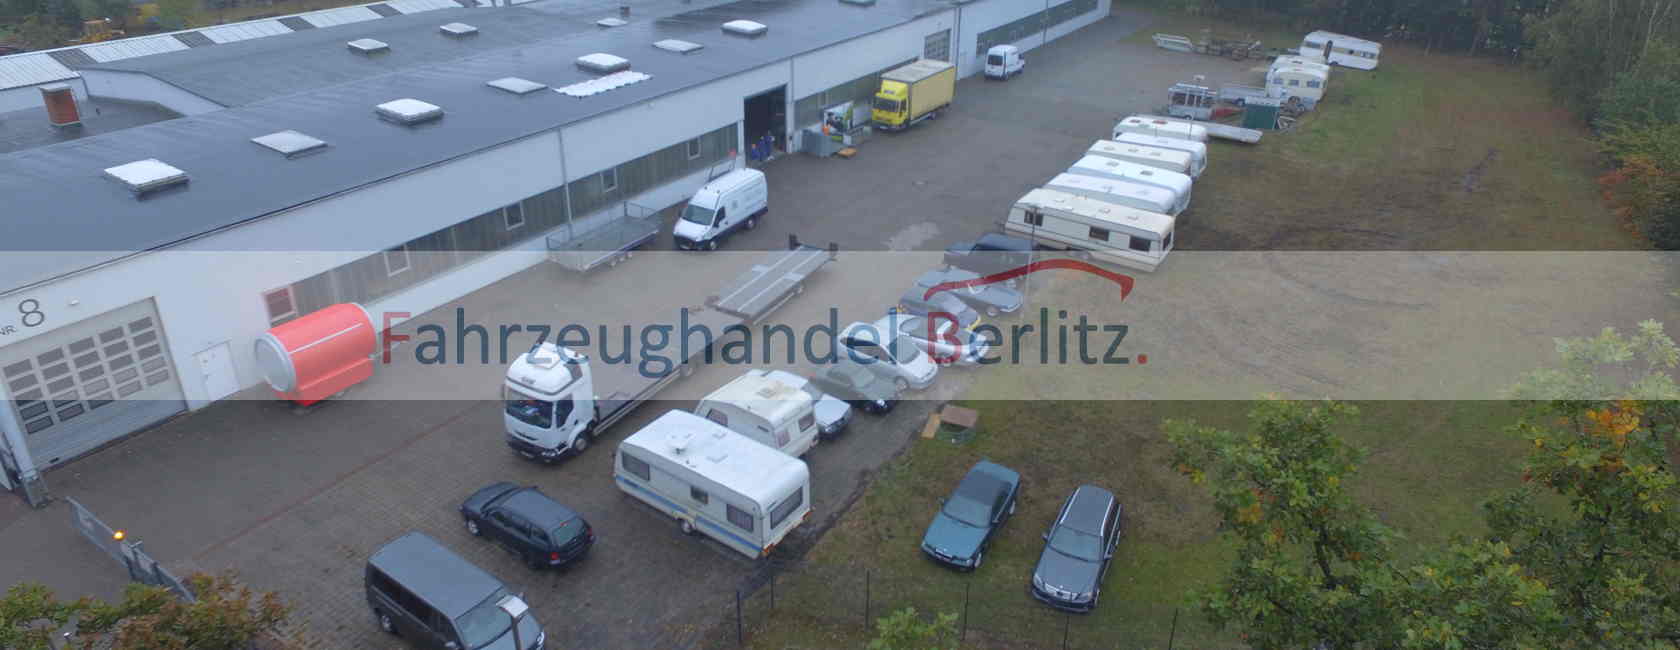 Fahrzeughandel Berlitz Hohenaverbergen Bild